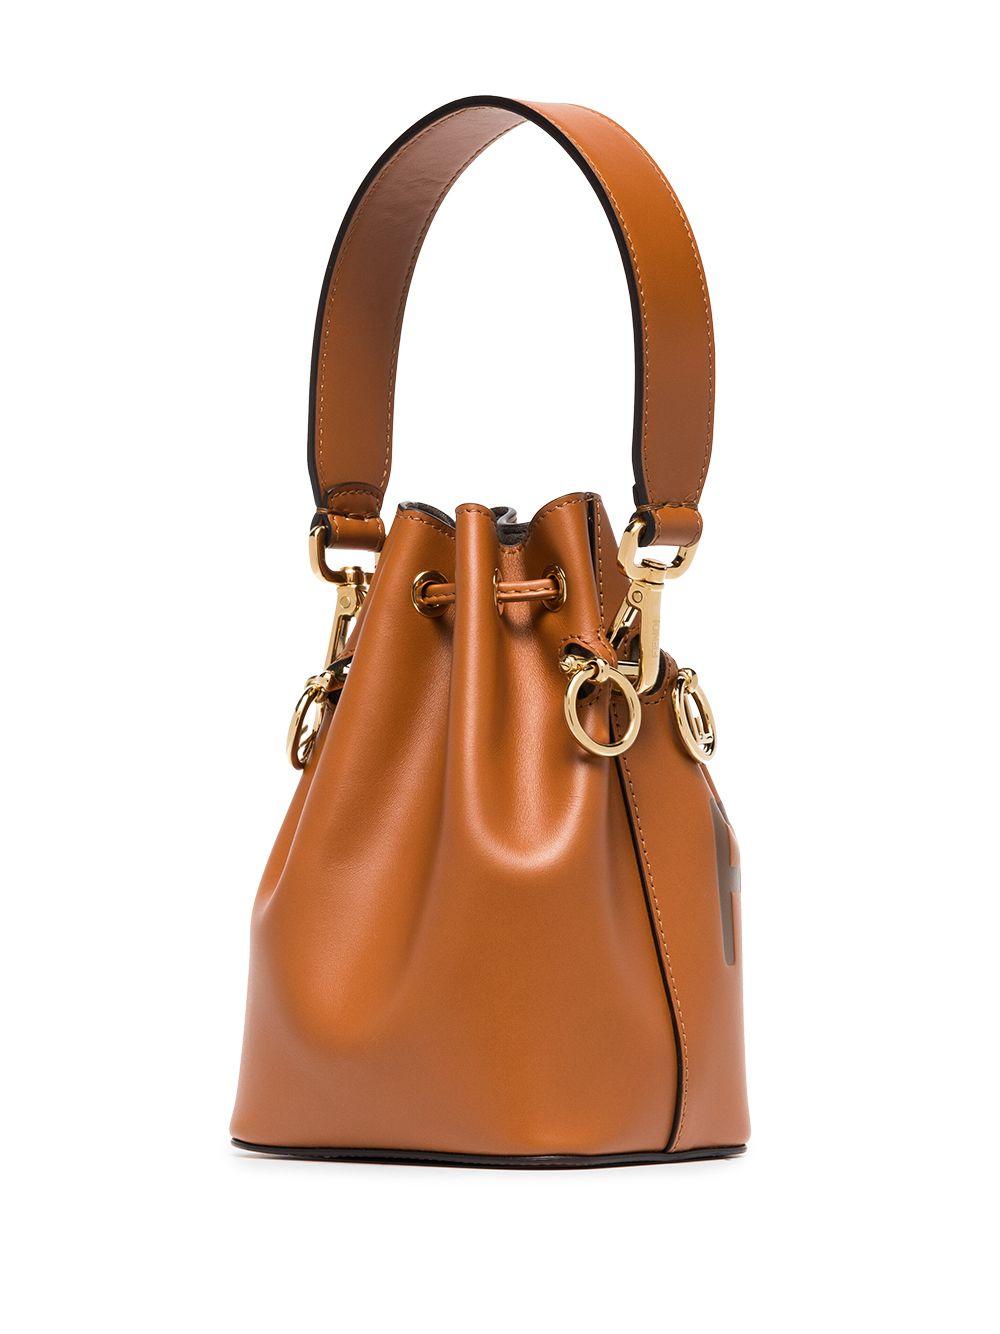 Fendi Mon Tresor Mini Leather Bucket Bag in Tan (Brown) - Save 27 